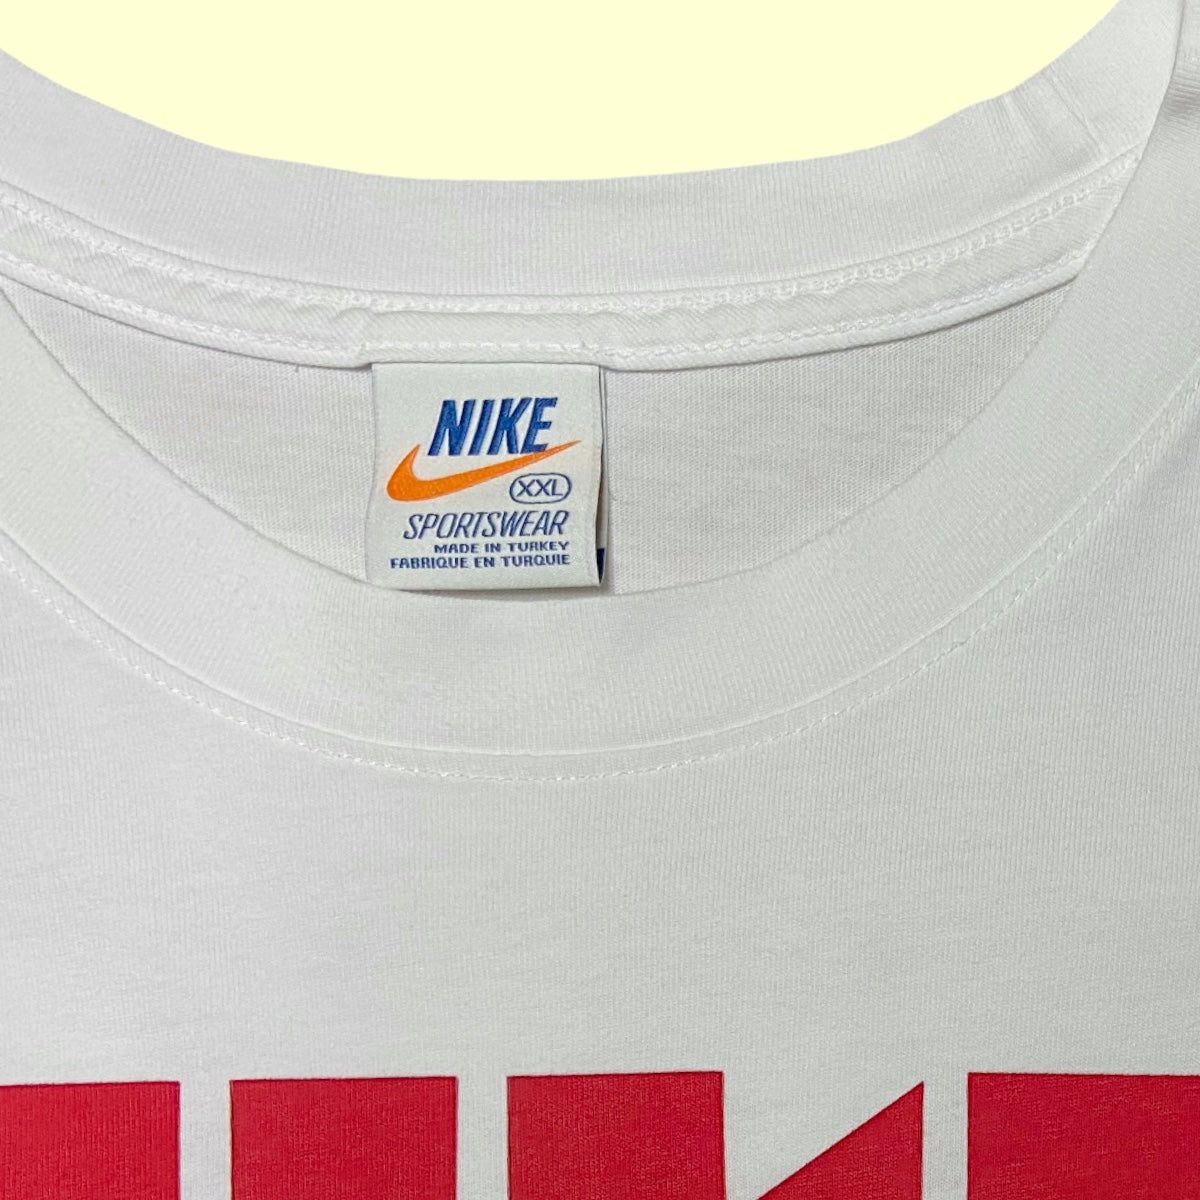 Vintage Nike Blockletter T-Shirt - 2XL